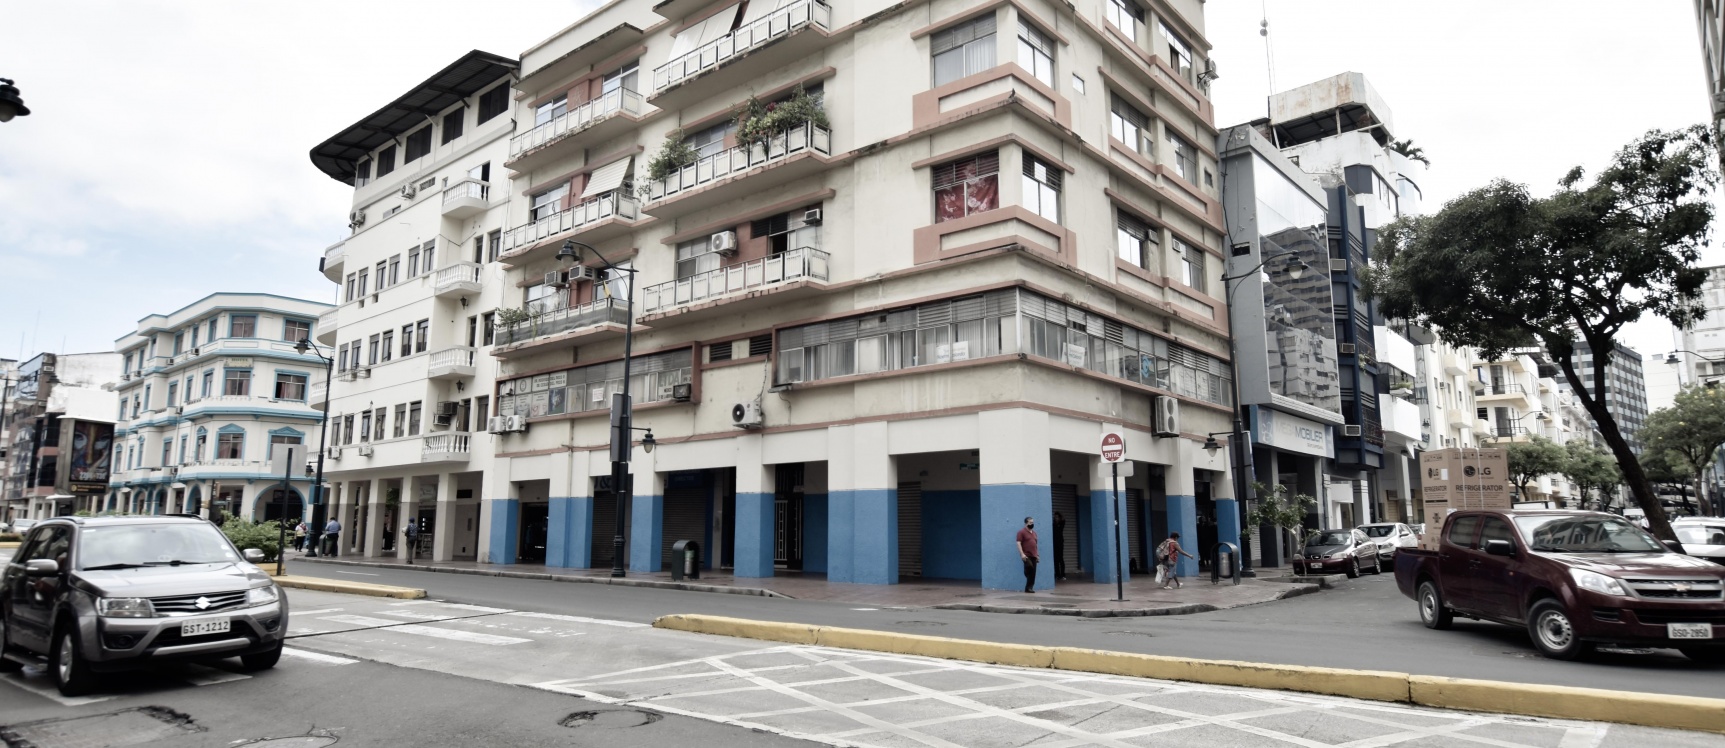 GeoBienes - Suite / oficina en alquiler ubicado en el Centro de Guayaquil - Plusvalia Guayaquil Casas de venta y alquiler Inmobiliaria Ecuador